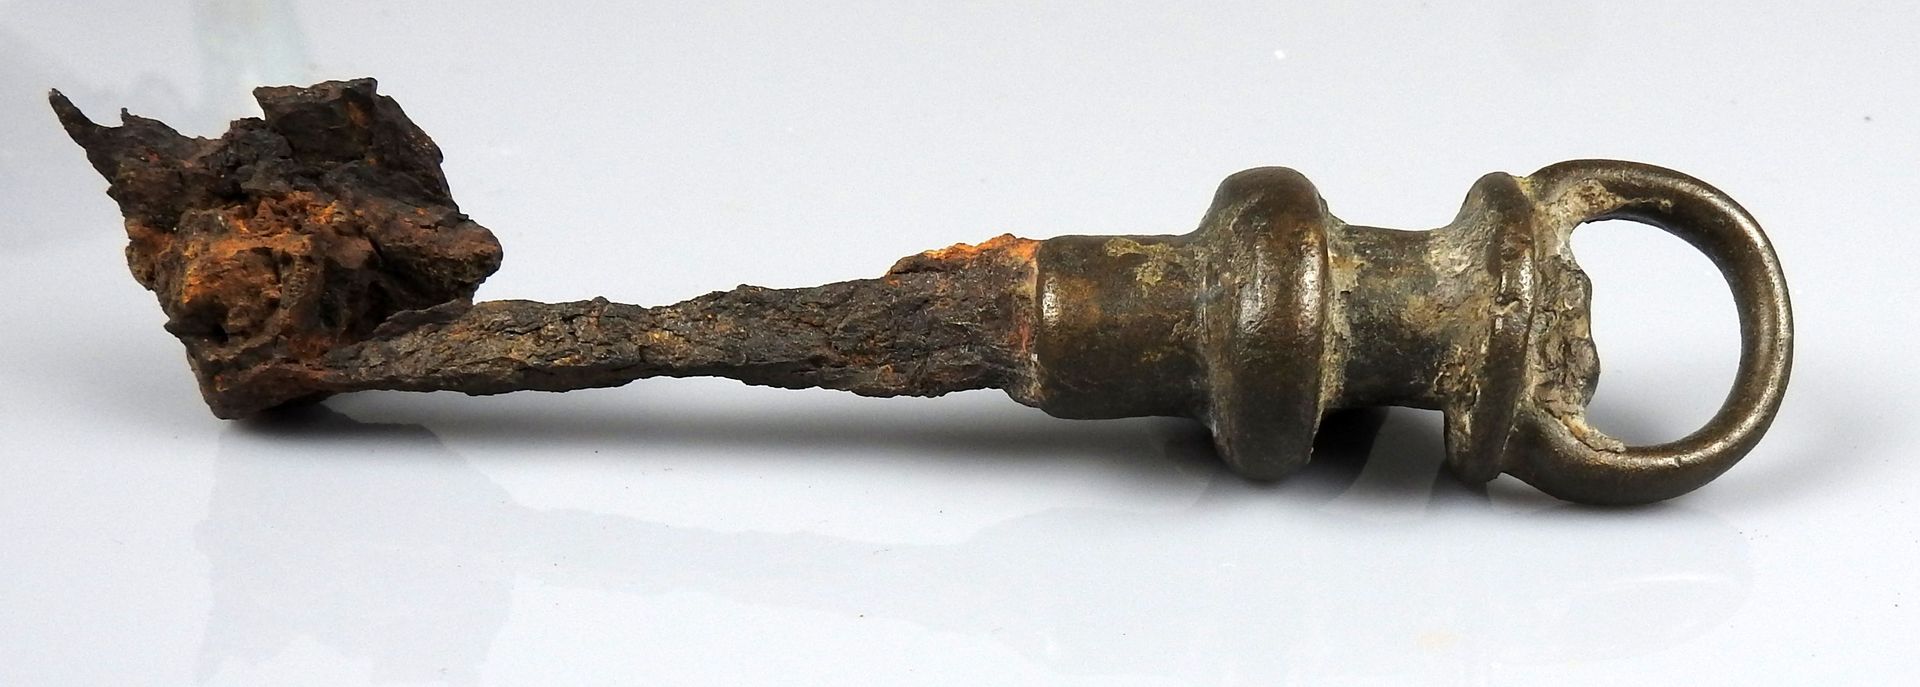 Null 带有坚固手柄的重要钥匙

前19世纪某省著名人士的收藏

青铜和铁13.5厘米

罗马时期